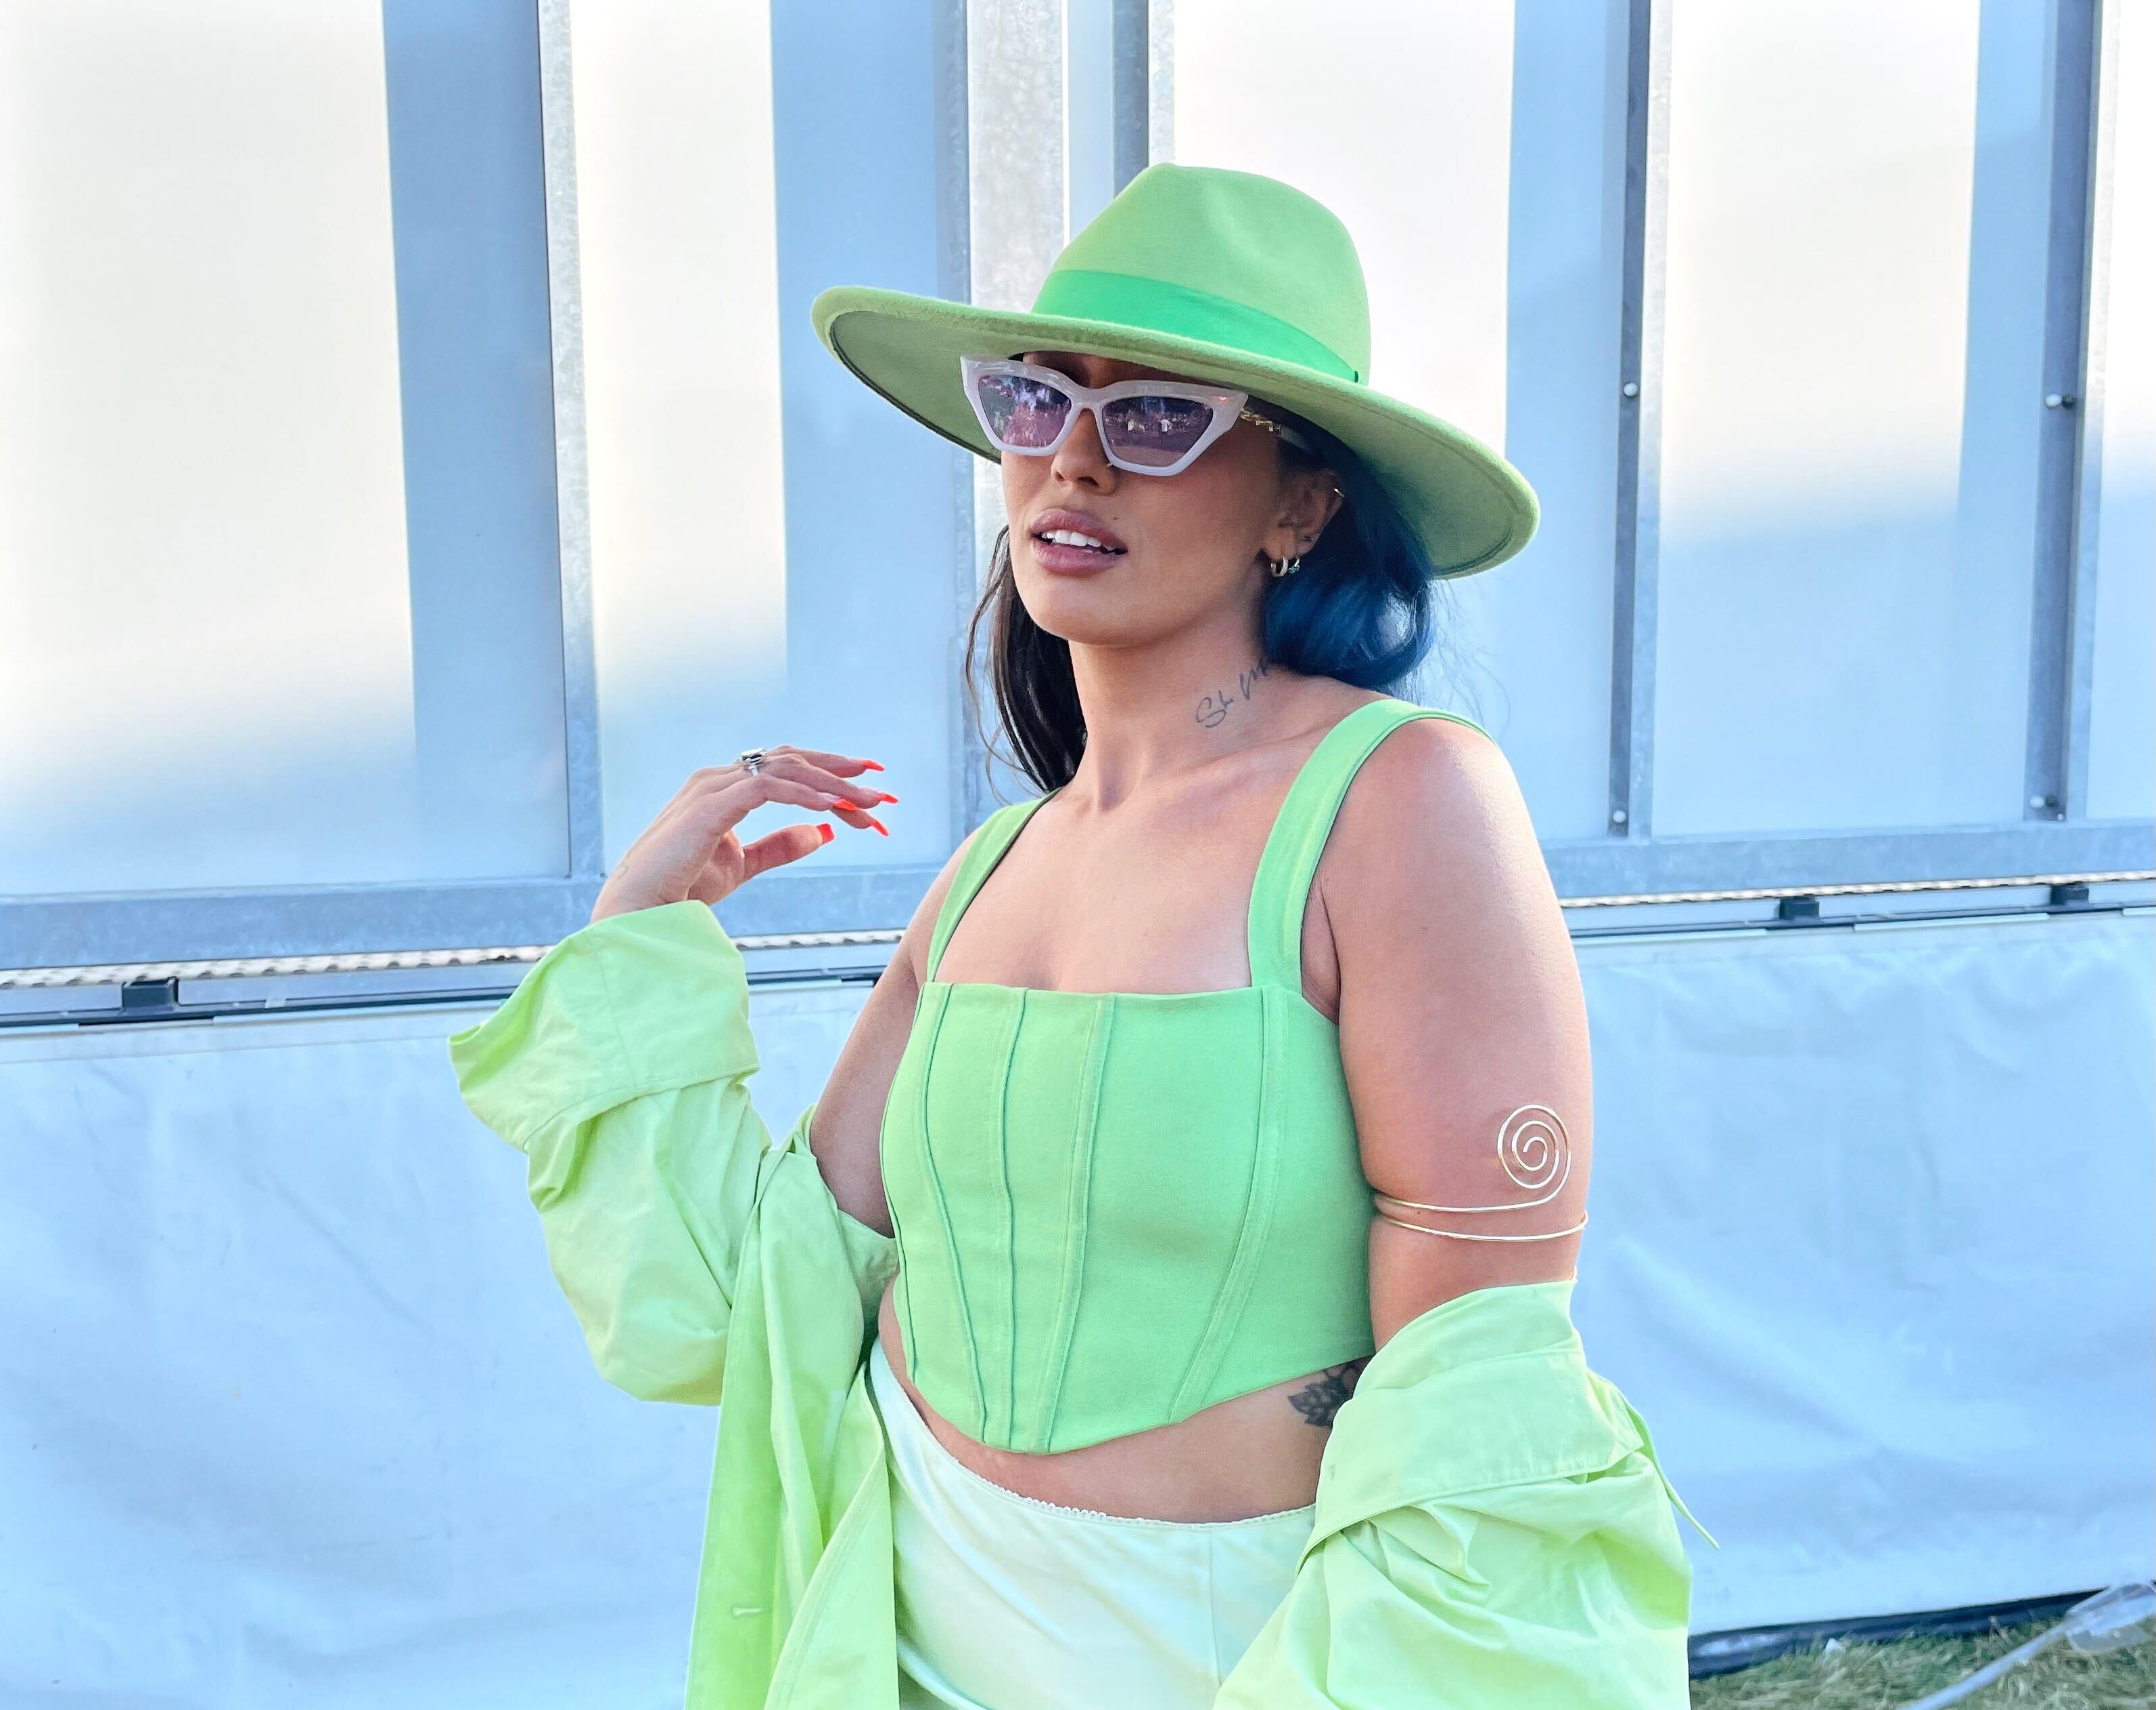 FESTIVALKLAR: Artisten Royane så smashing ut i sin grønne look. Legg også merke til smykket rundt armen hennes.